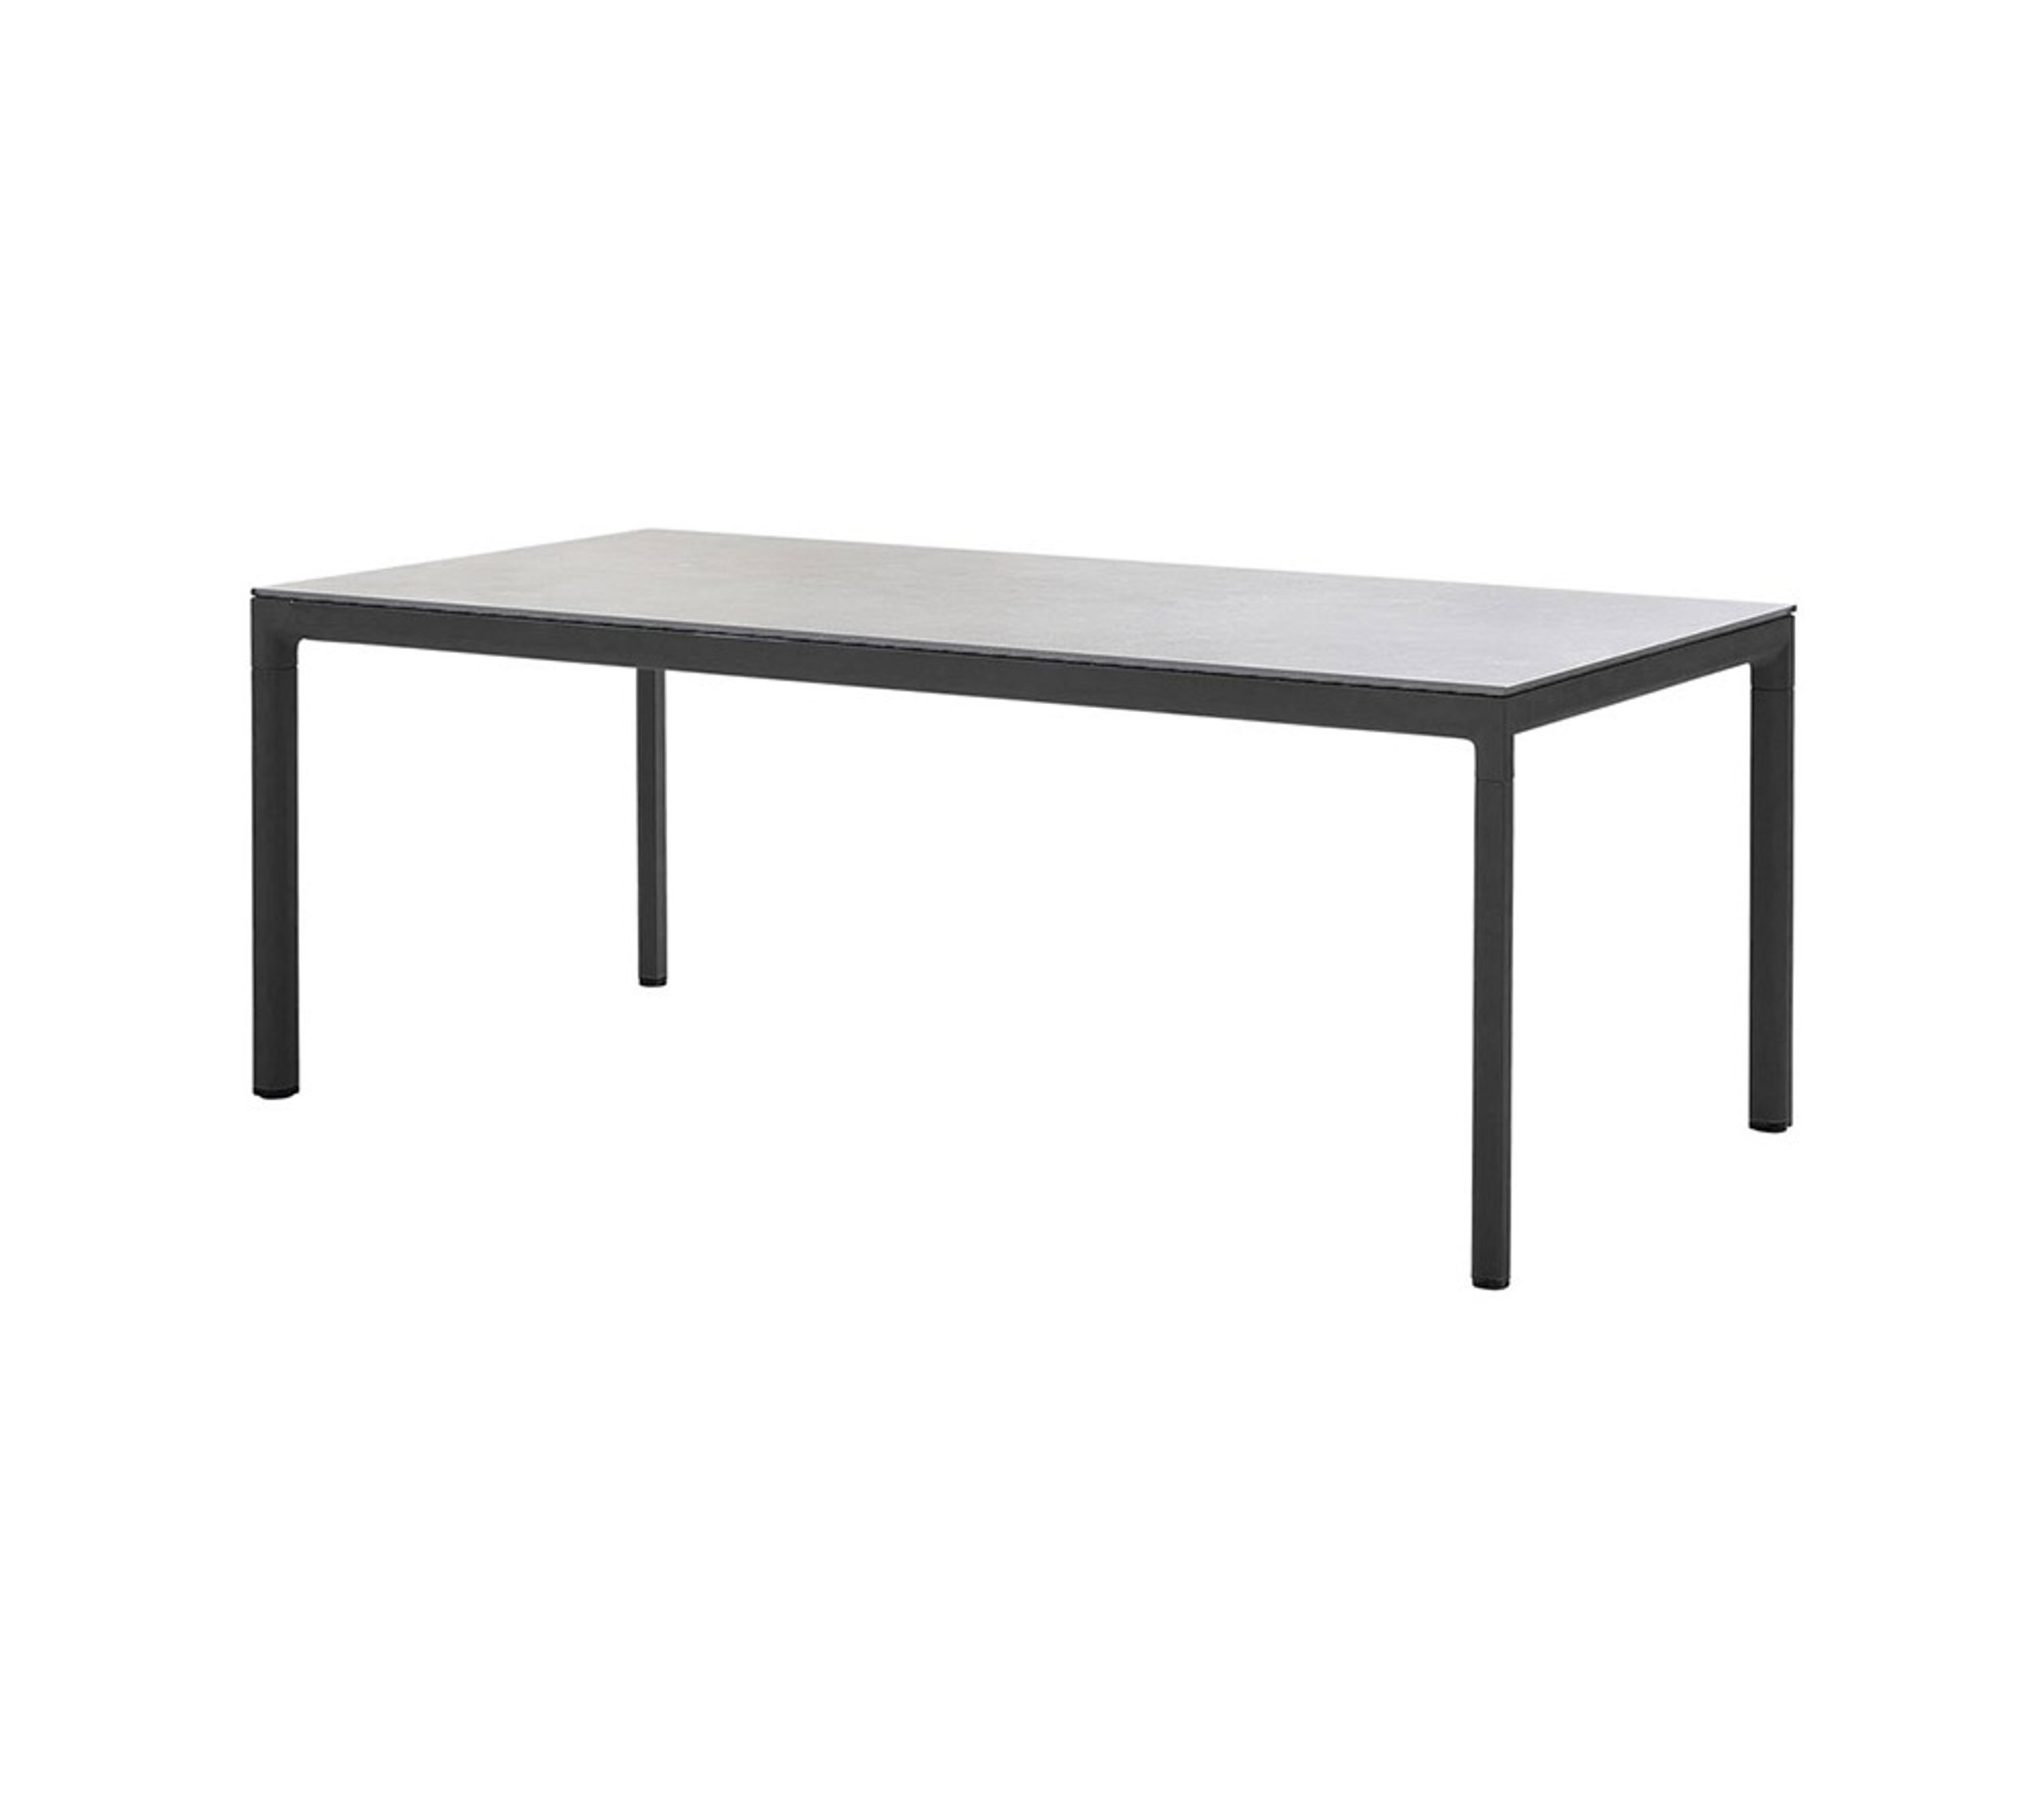 Cane-line - Table de jardin - Drop Table - 200x100 - Frame: Lava Grey Aluminum / Tabletop: Black Fossil Ceramic